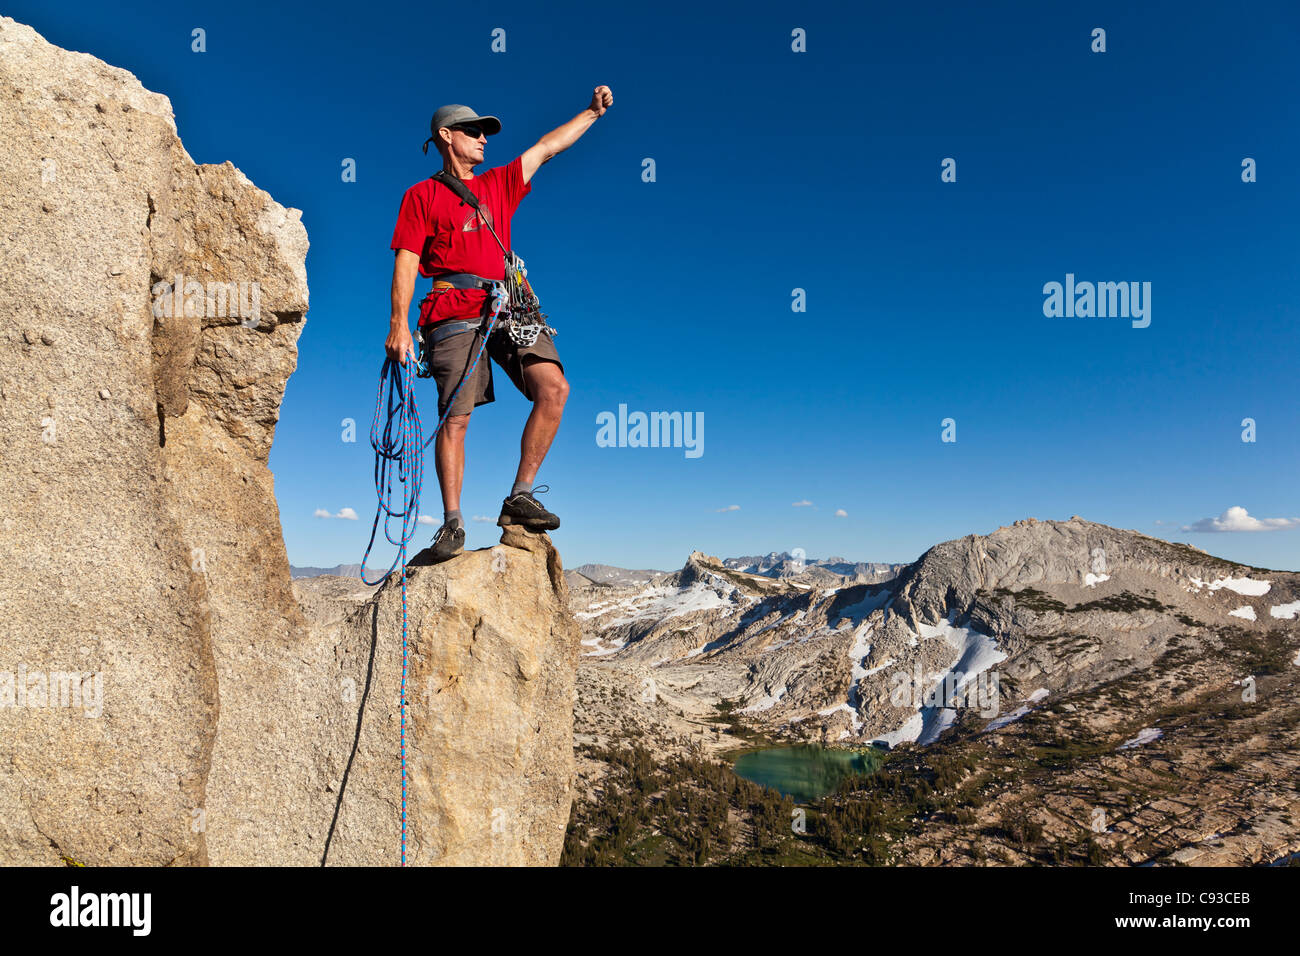 Male rock climber célèbre au sommet après une ascension réussie. Banque D'Images